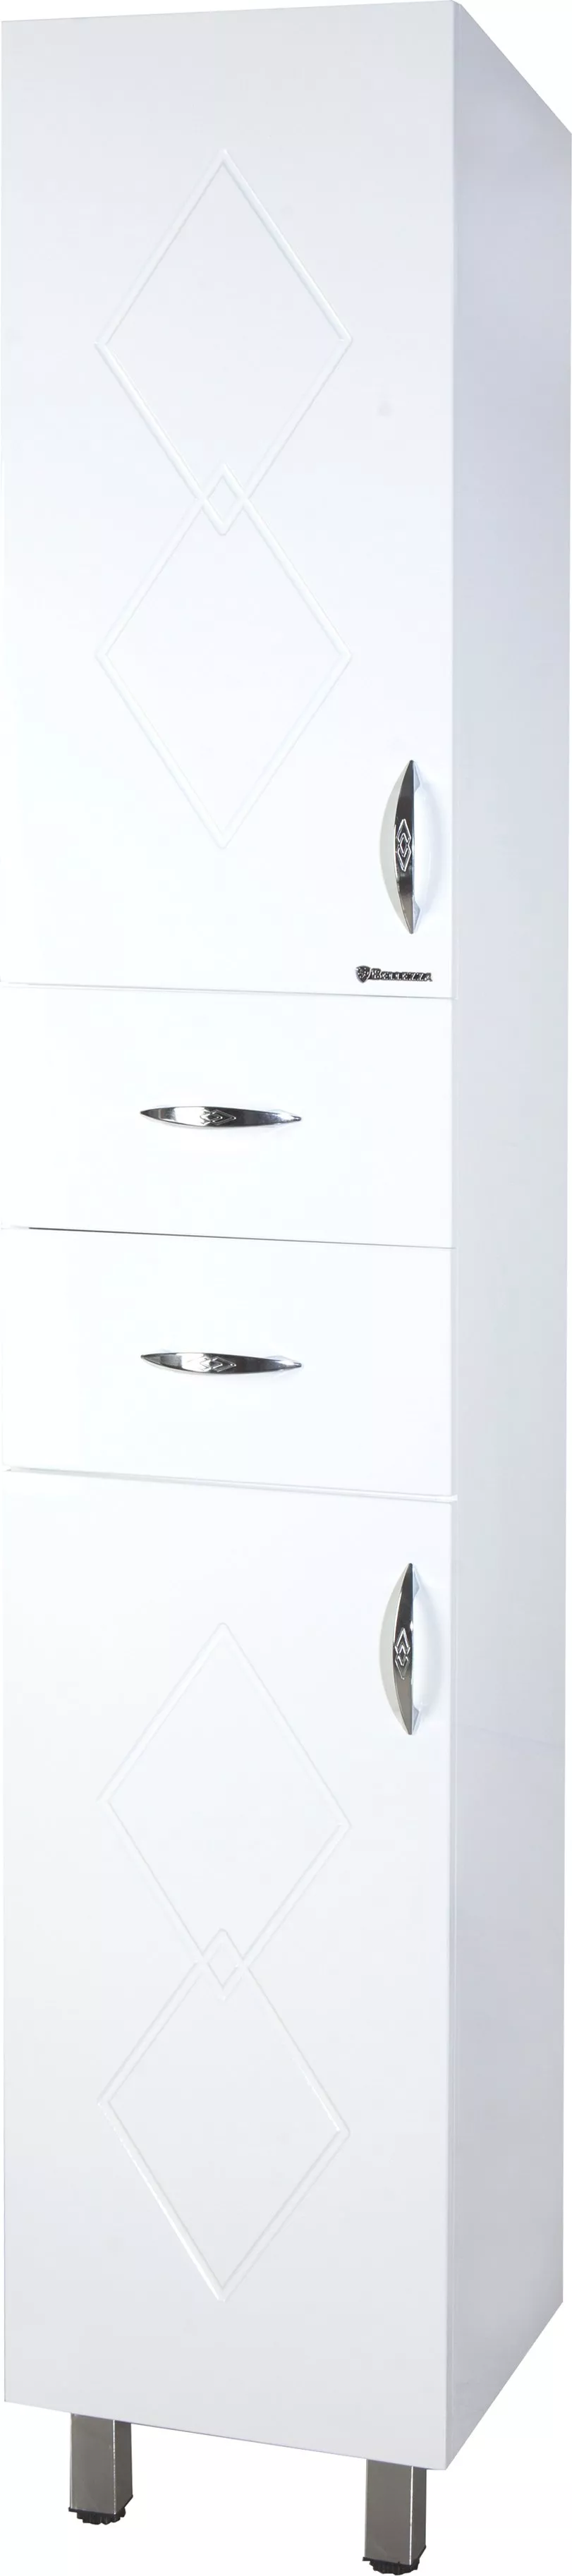 Шкаф-пенал Bellezza Элеганс 35 с бельевой корзиной универсальный, размер 35, цвет белый 4628604120014 - фото 1